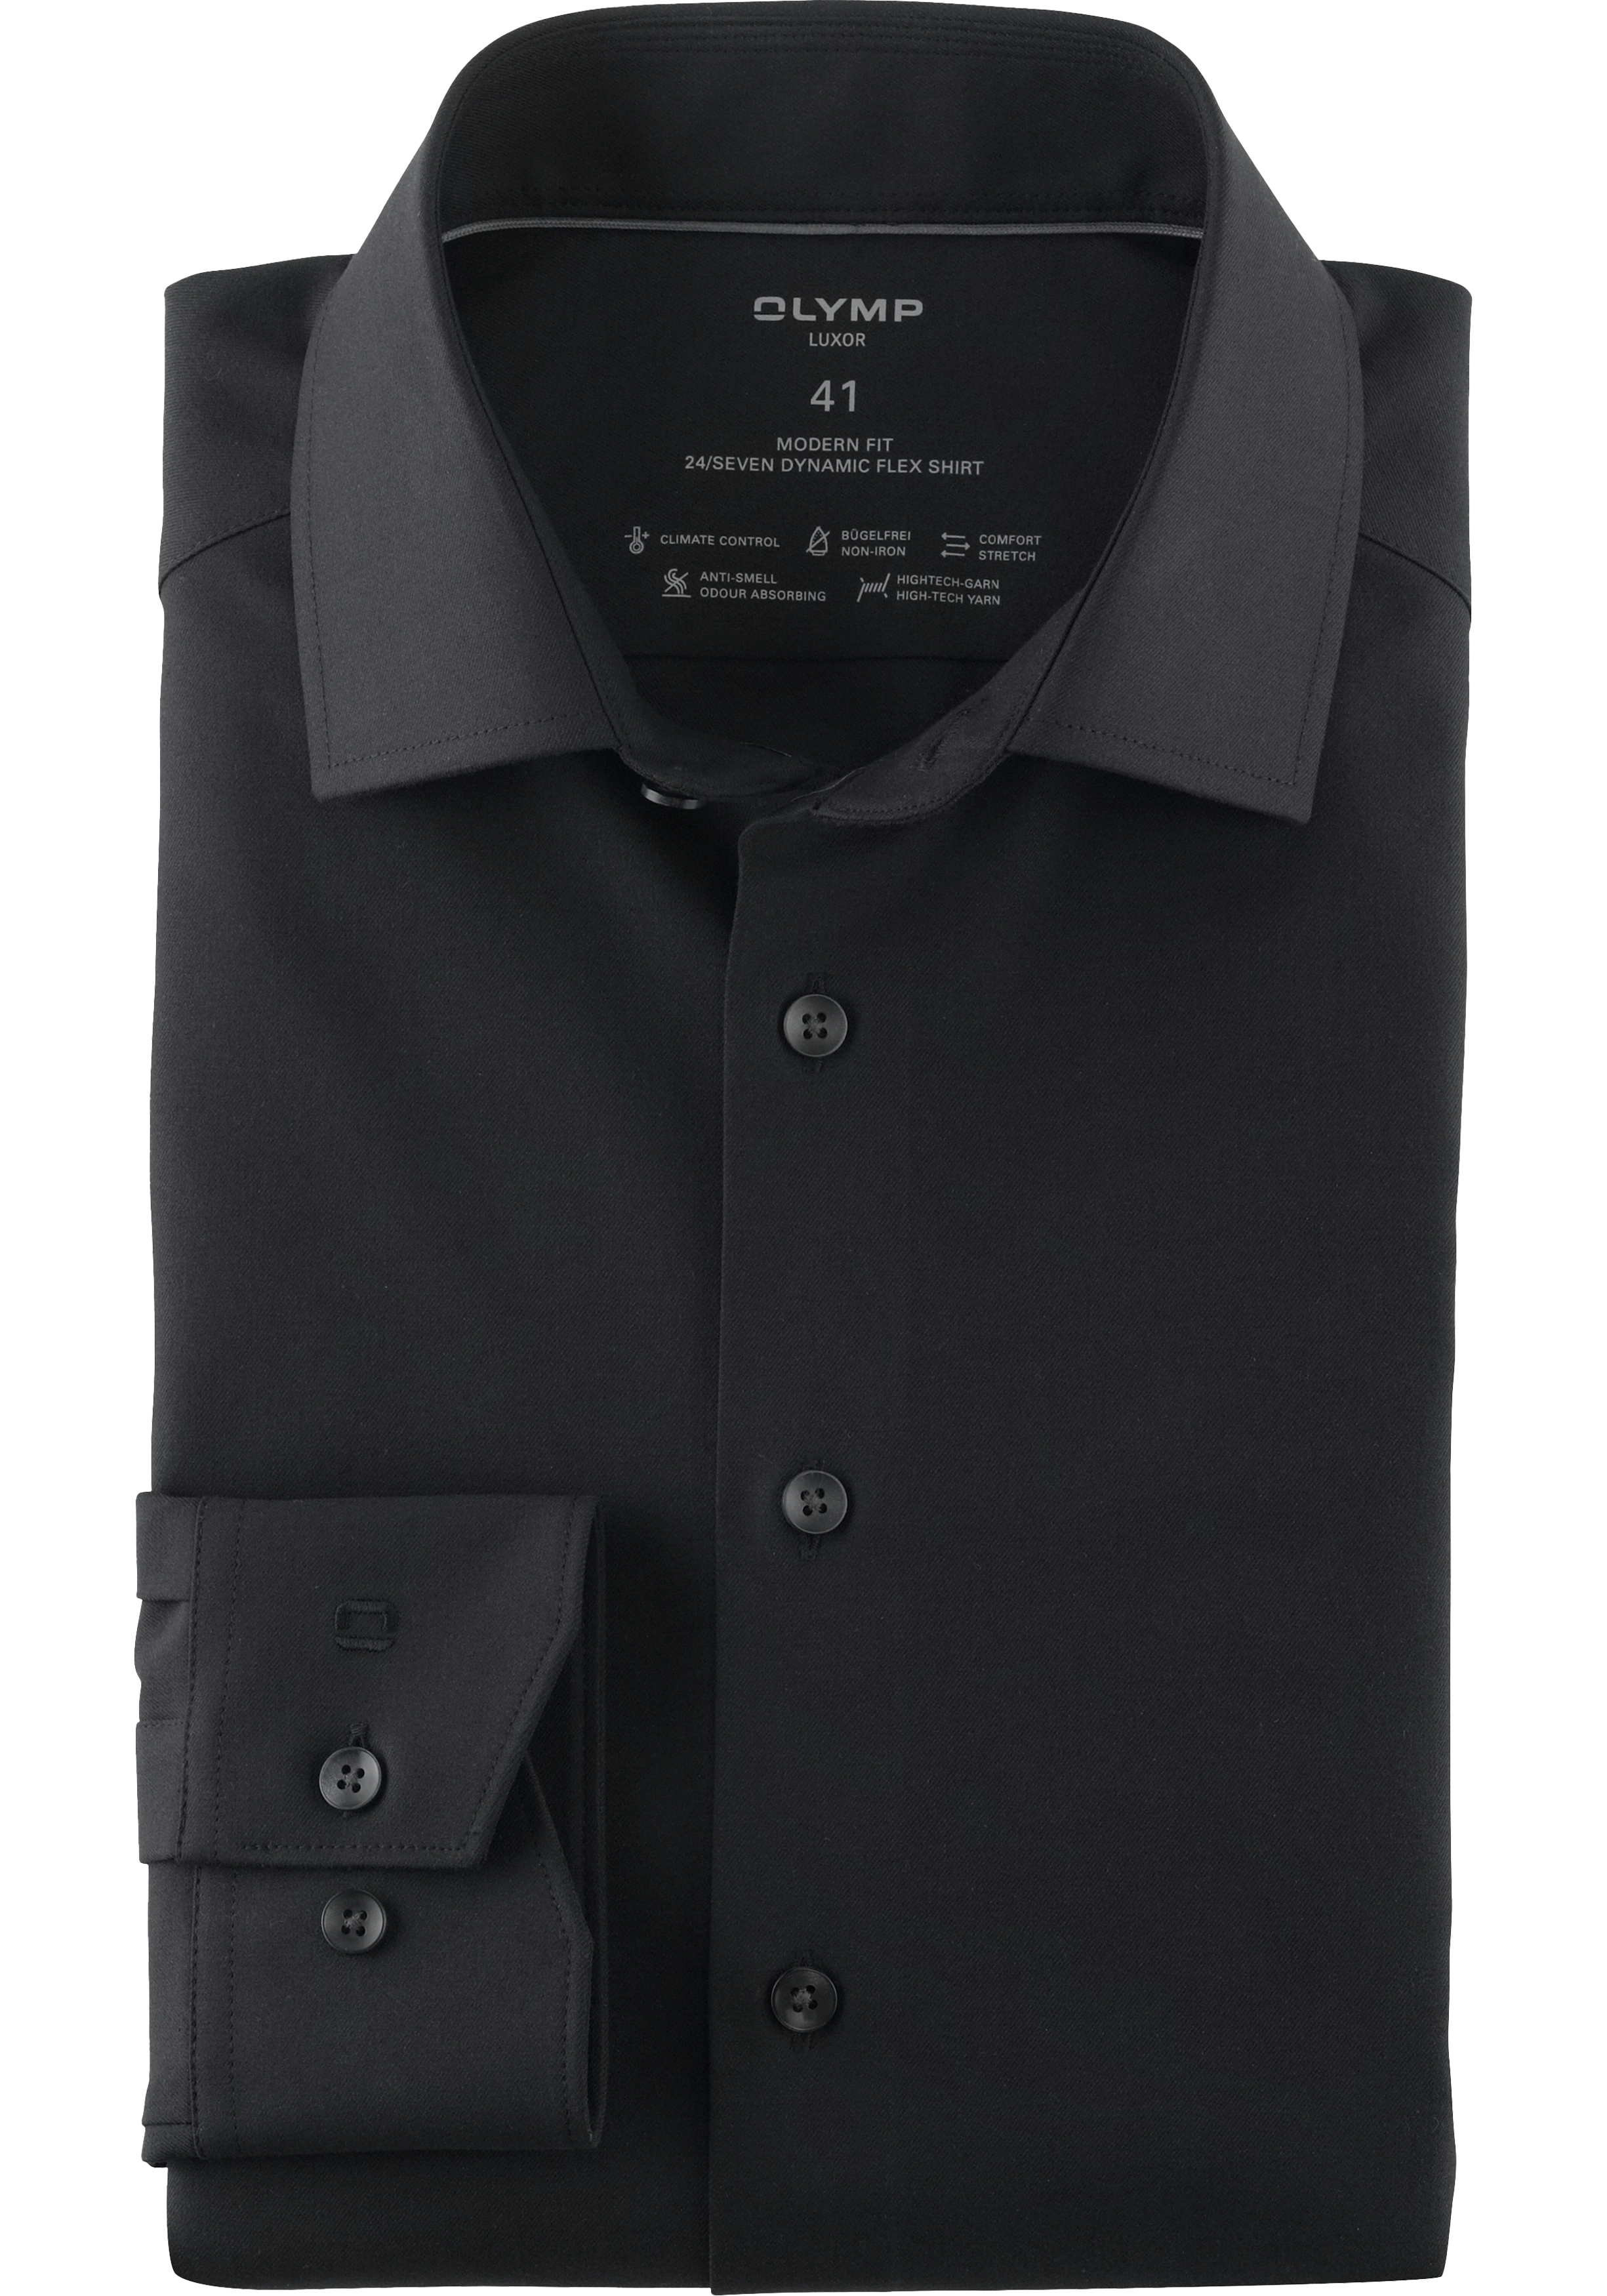 OLYMP Luxor 24/7 modern fit overhemd, popeline, zwart